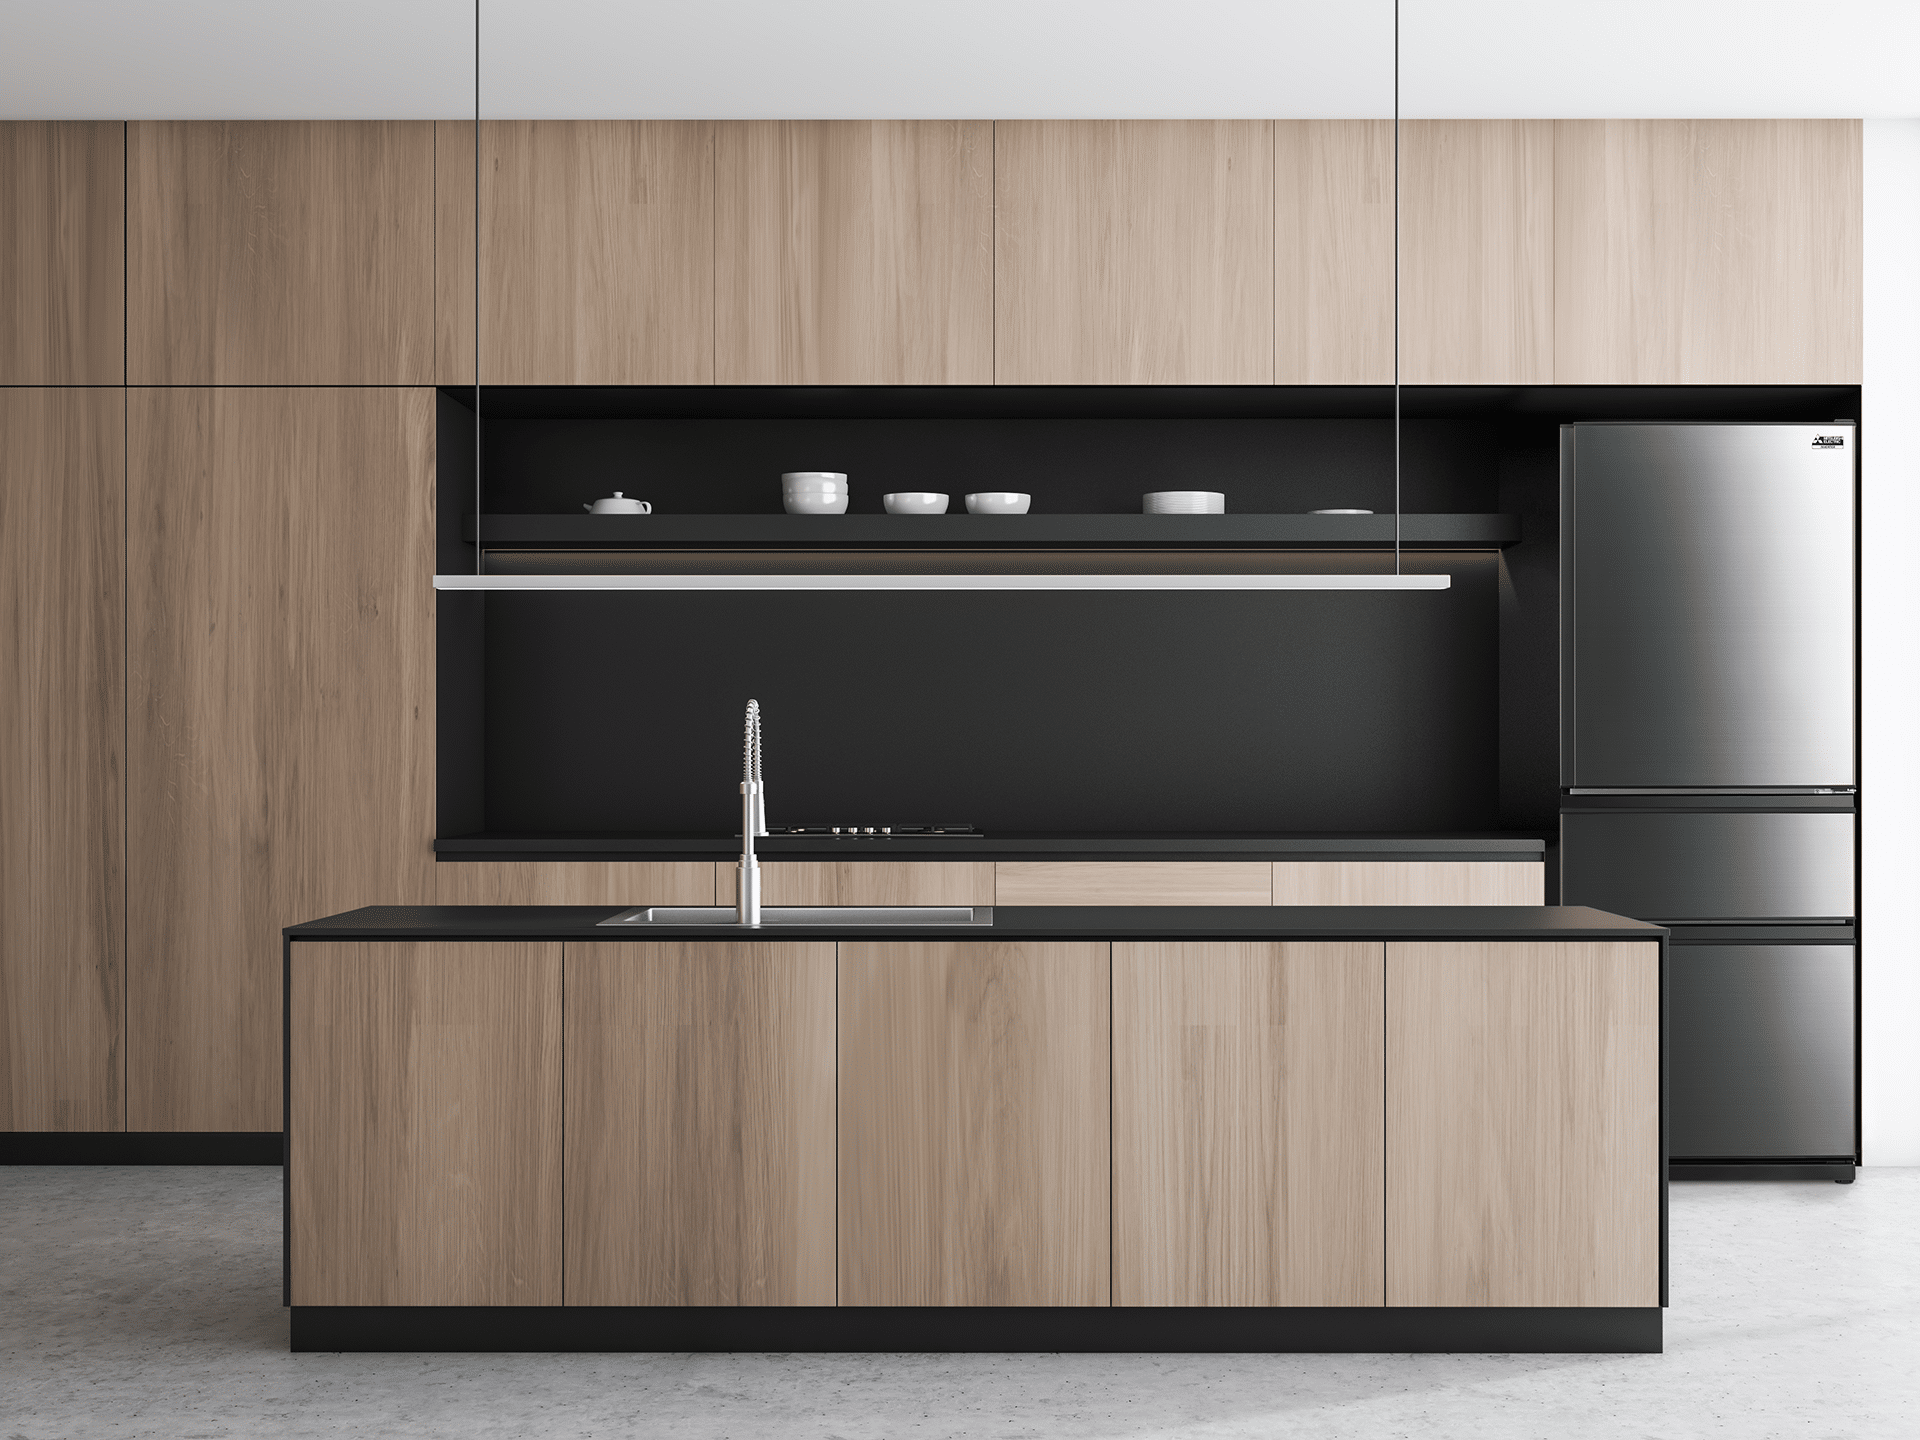 MR-CX450ER-BST-A-dark-and-wood-kitchen-1920×1440